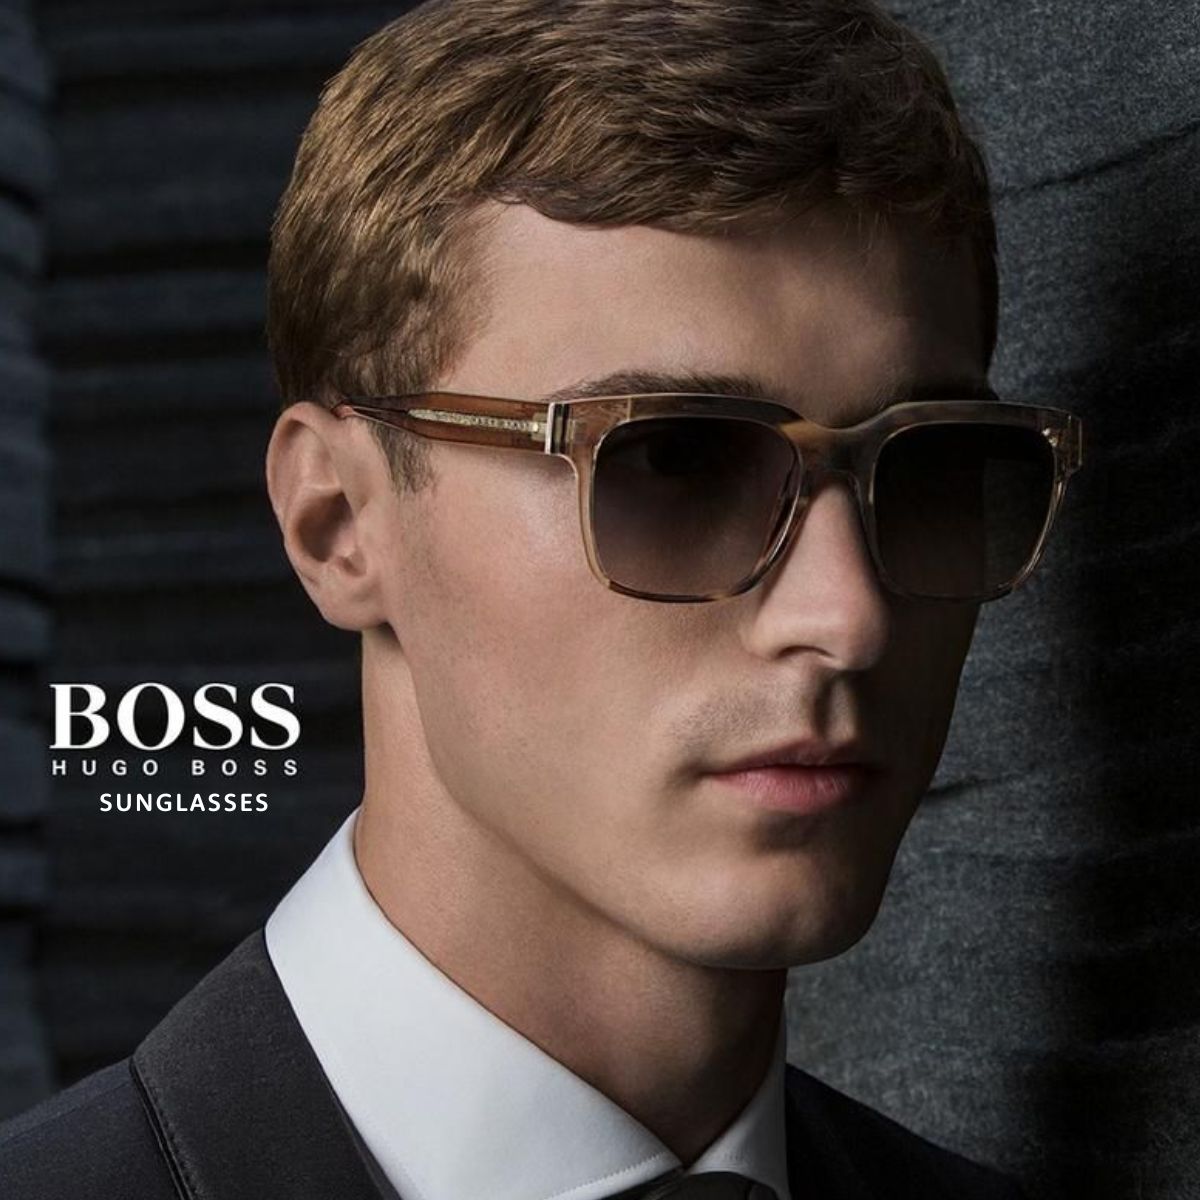 "Boss sunglasses for men and women at optorium"